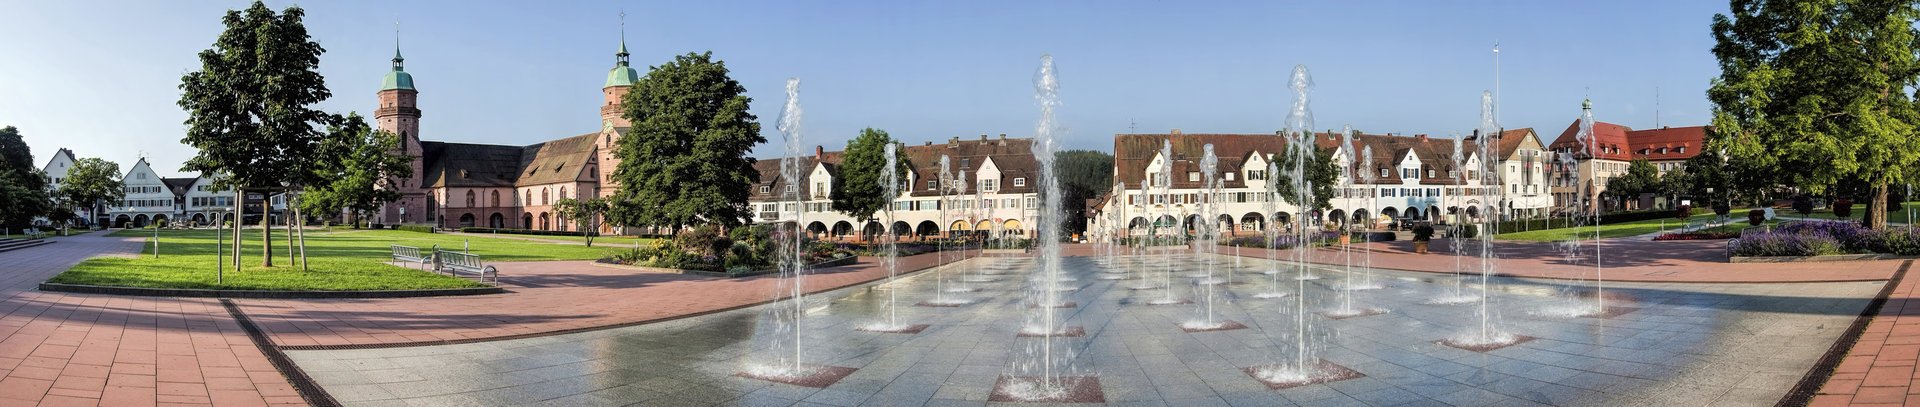 Fontänen auf Marktplatz in Freudenstadt